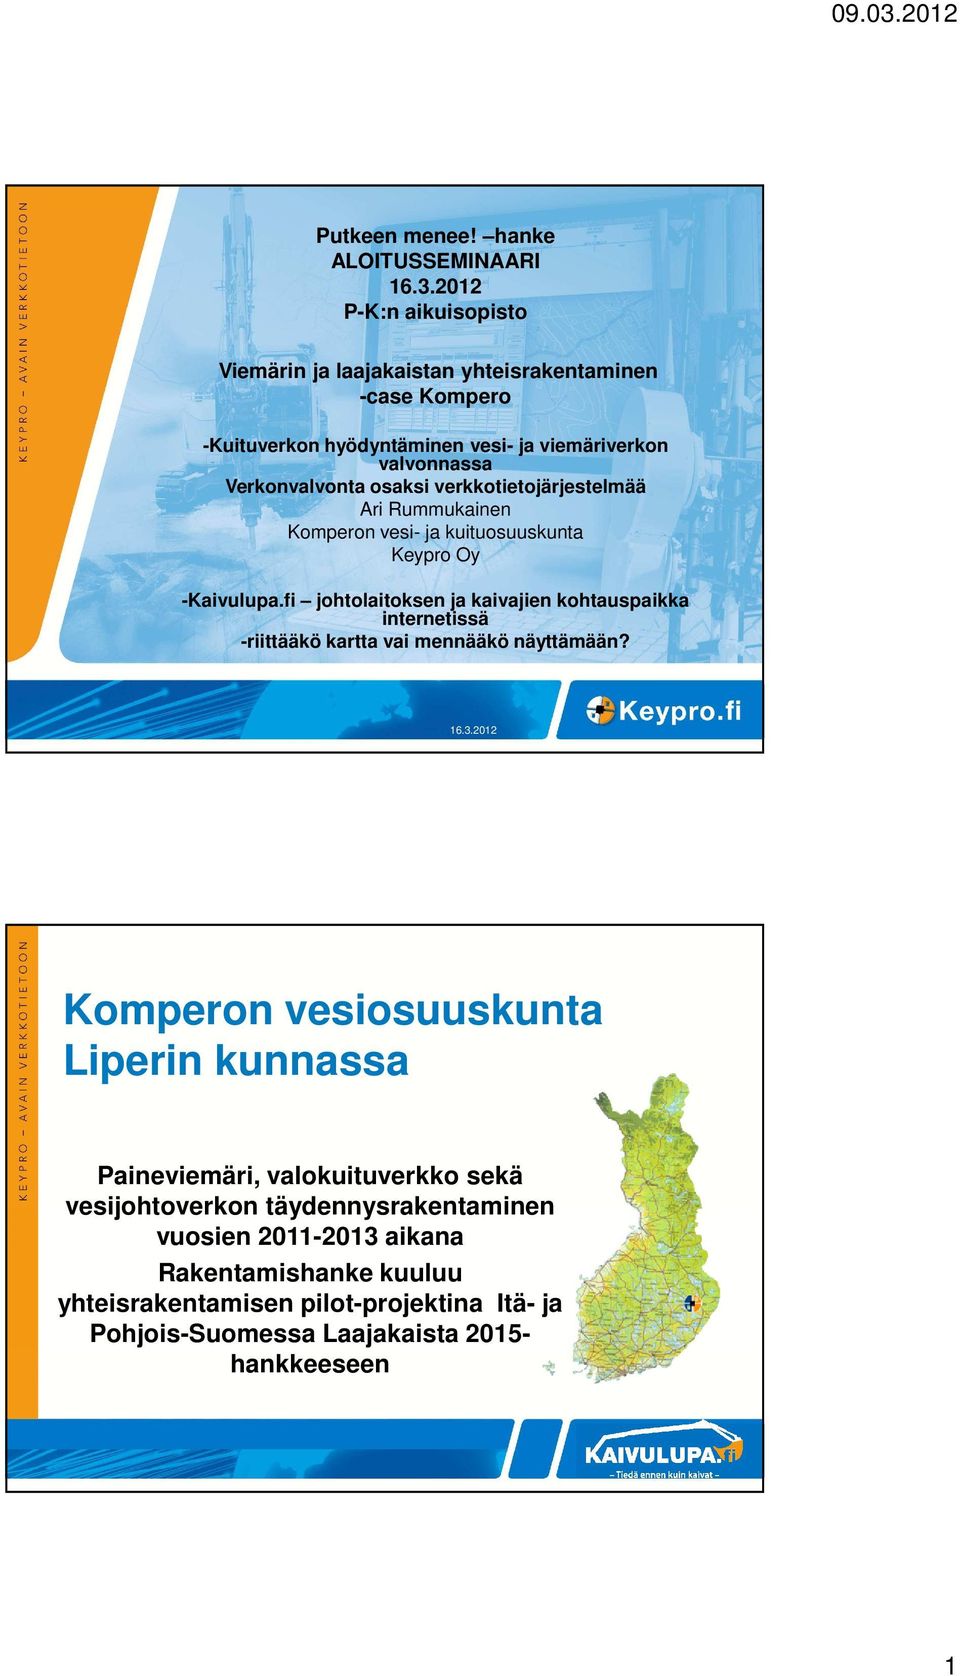 verkkotietojärjestelmää Ari Rummukainen Komperon vesi- ja kuituosuuskunta Keypro Oy -Kaivulupa.